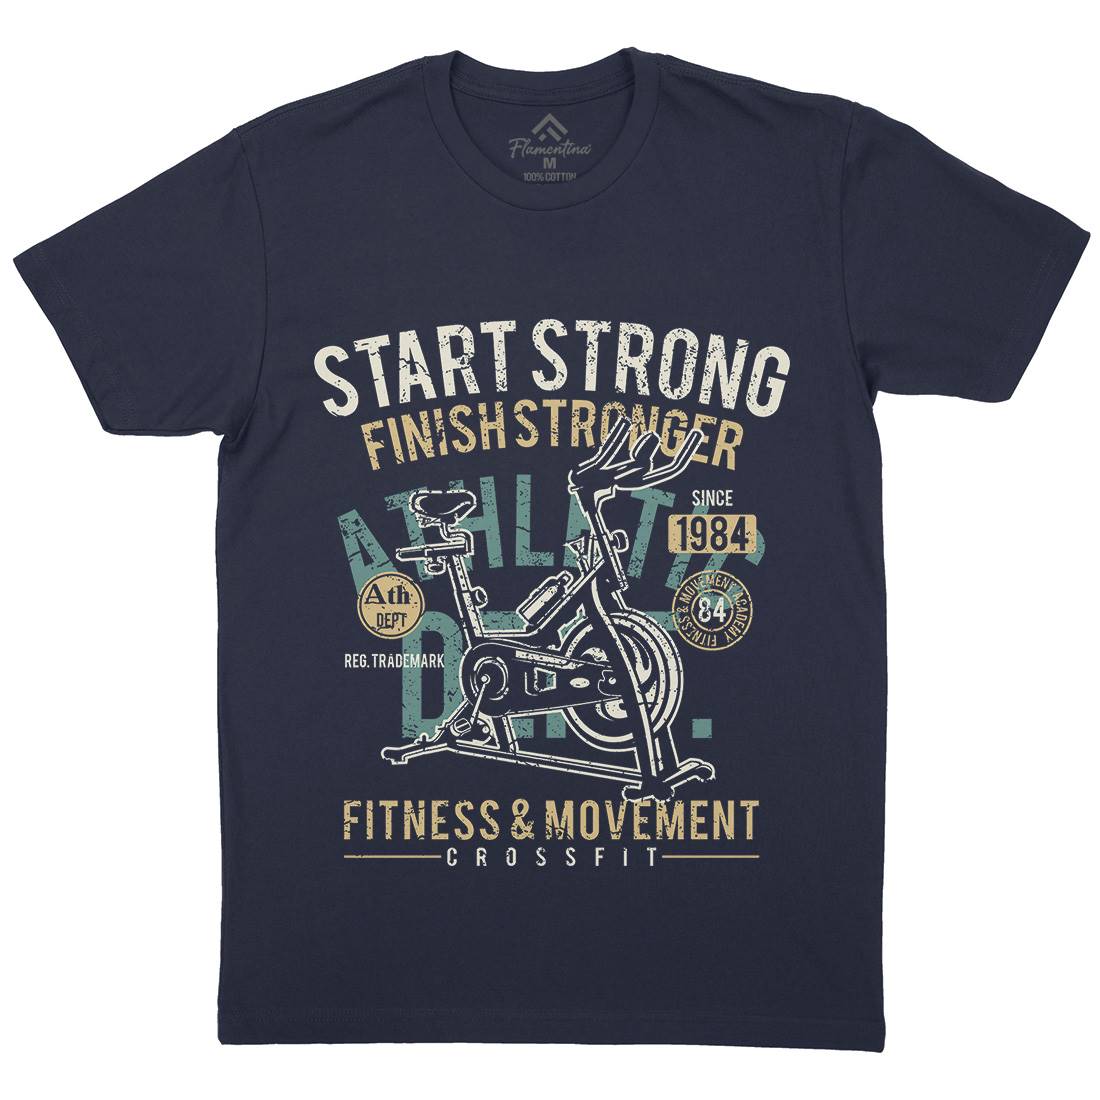 Start Strong Mens Organic Crew Neck T-Shirt Gym A159